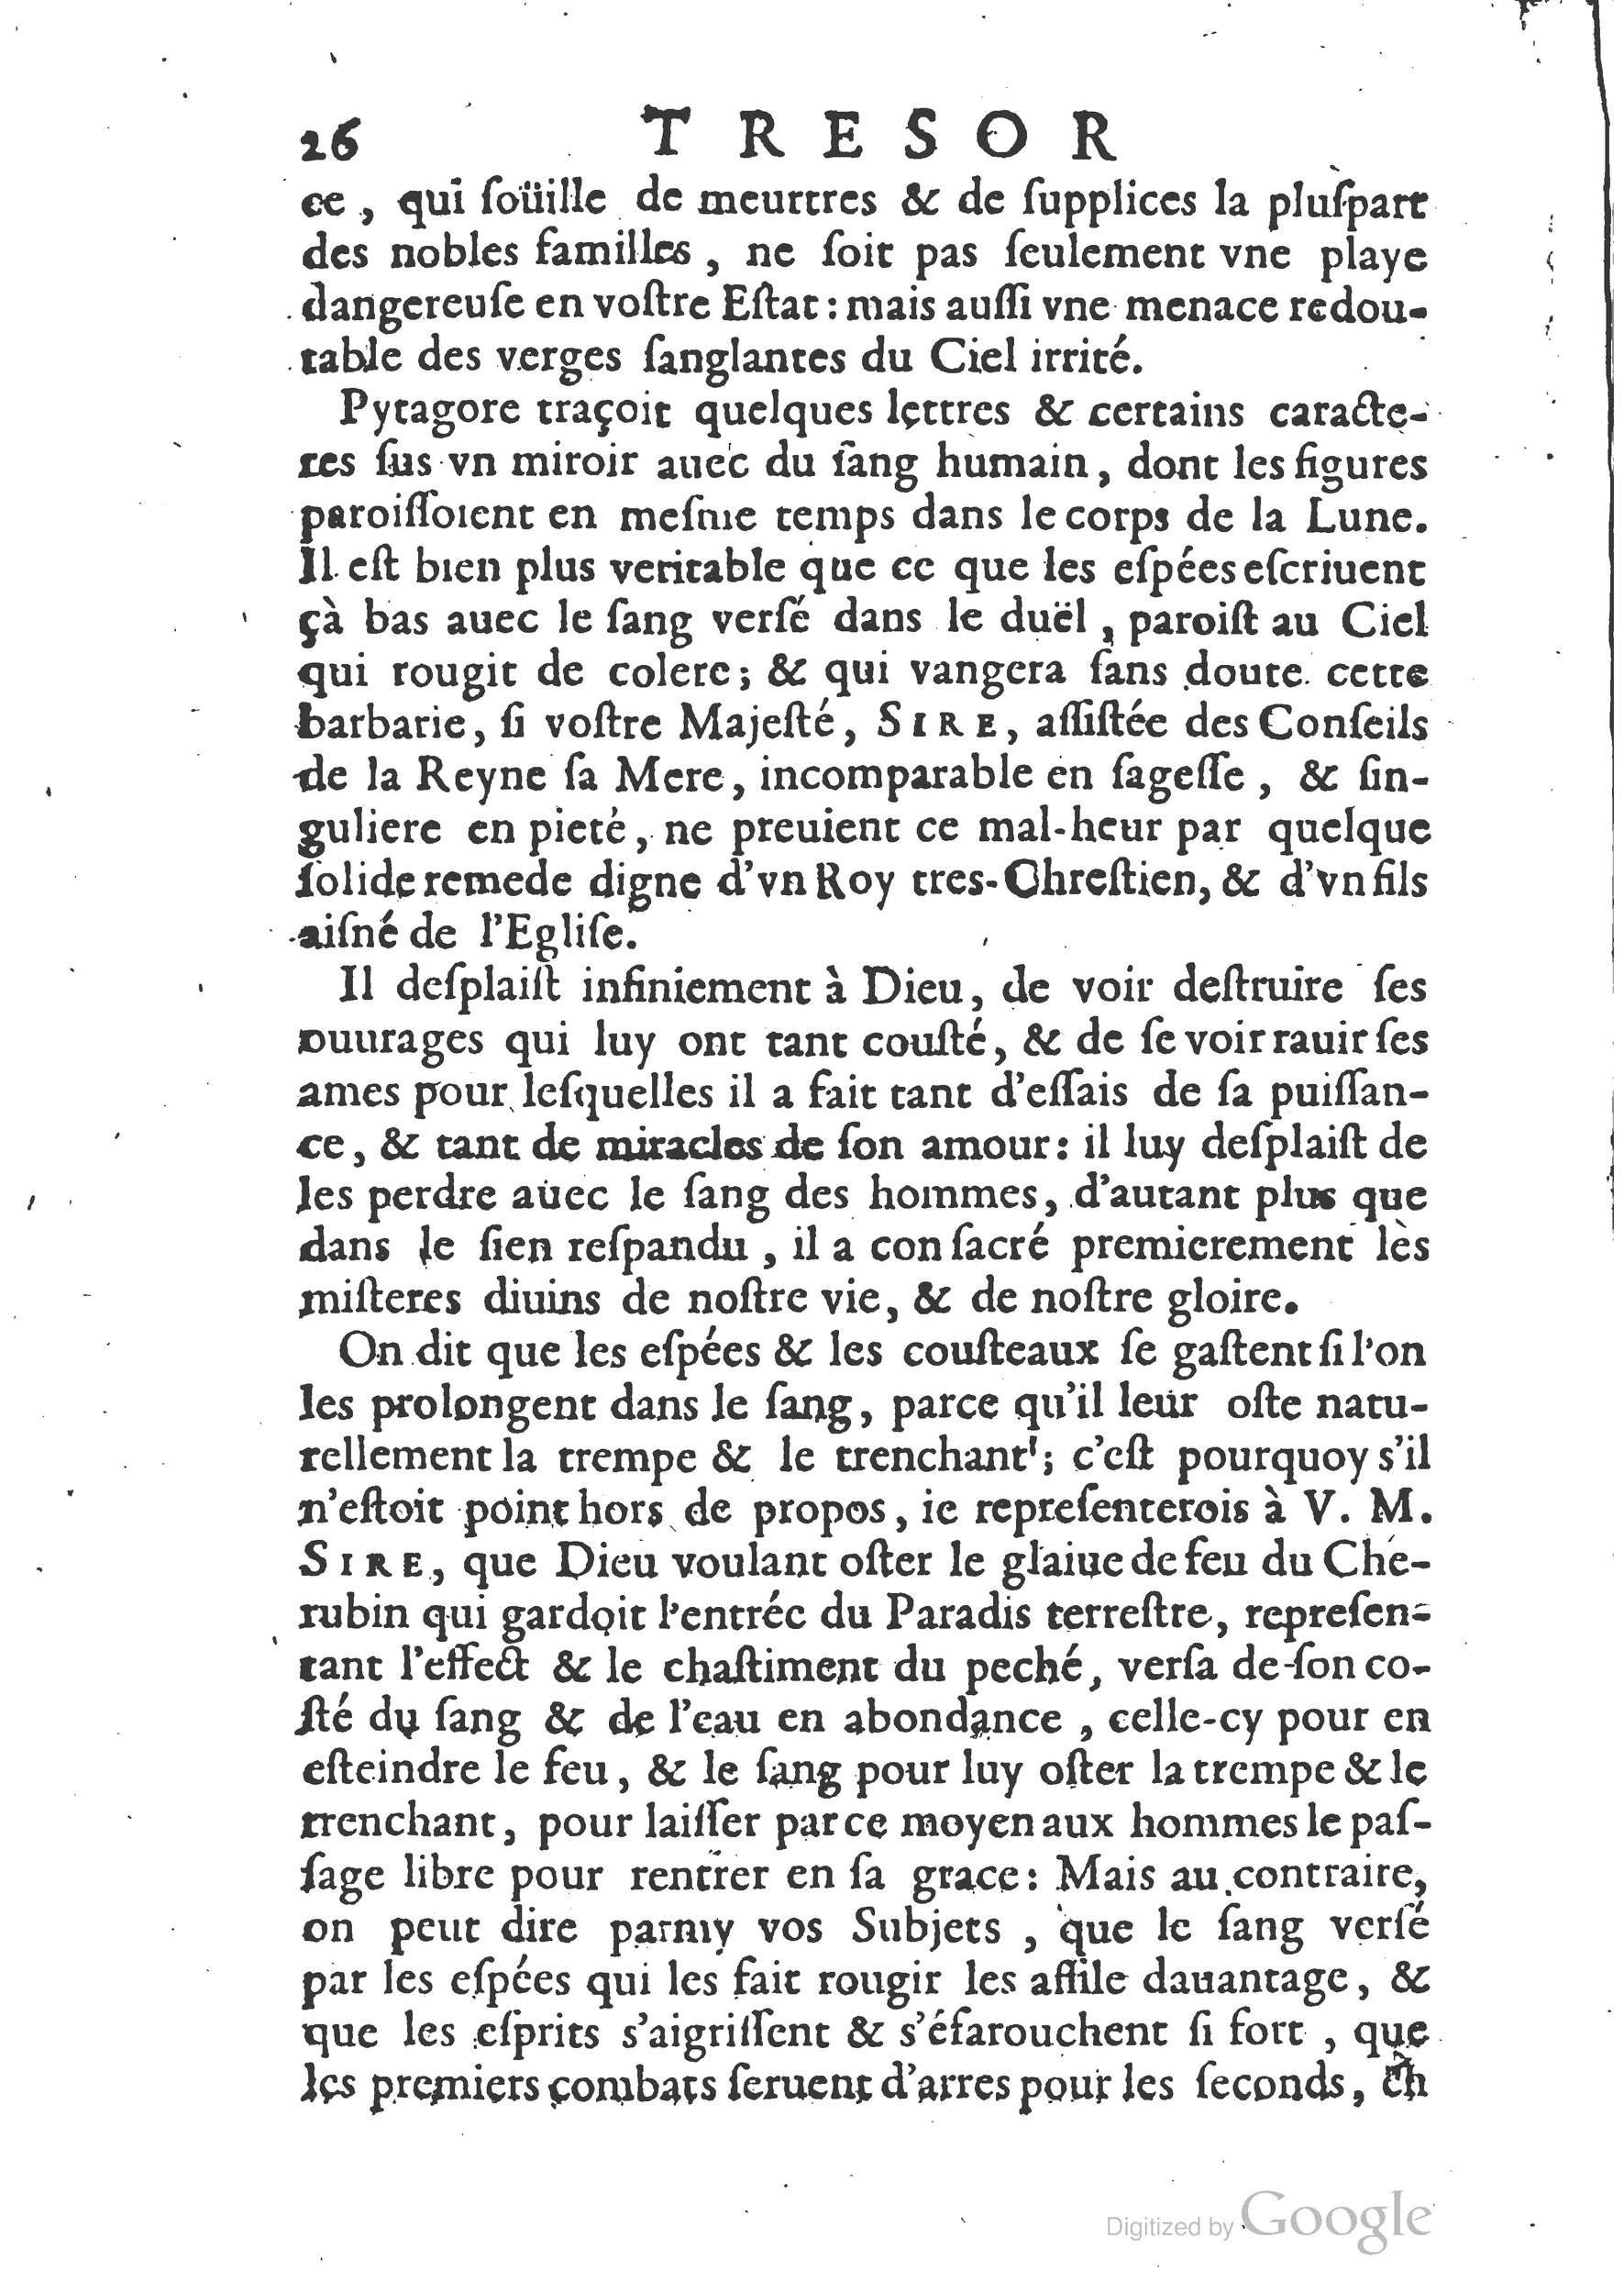 1654 Trésor des harangues, remontrances et oraisons funèbres Robin_BM Lyon_Page_045.jpg